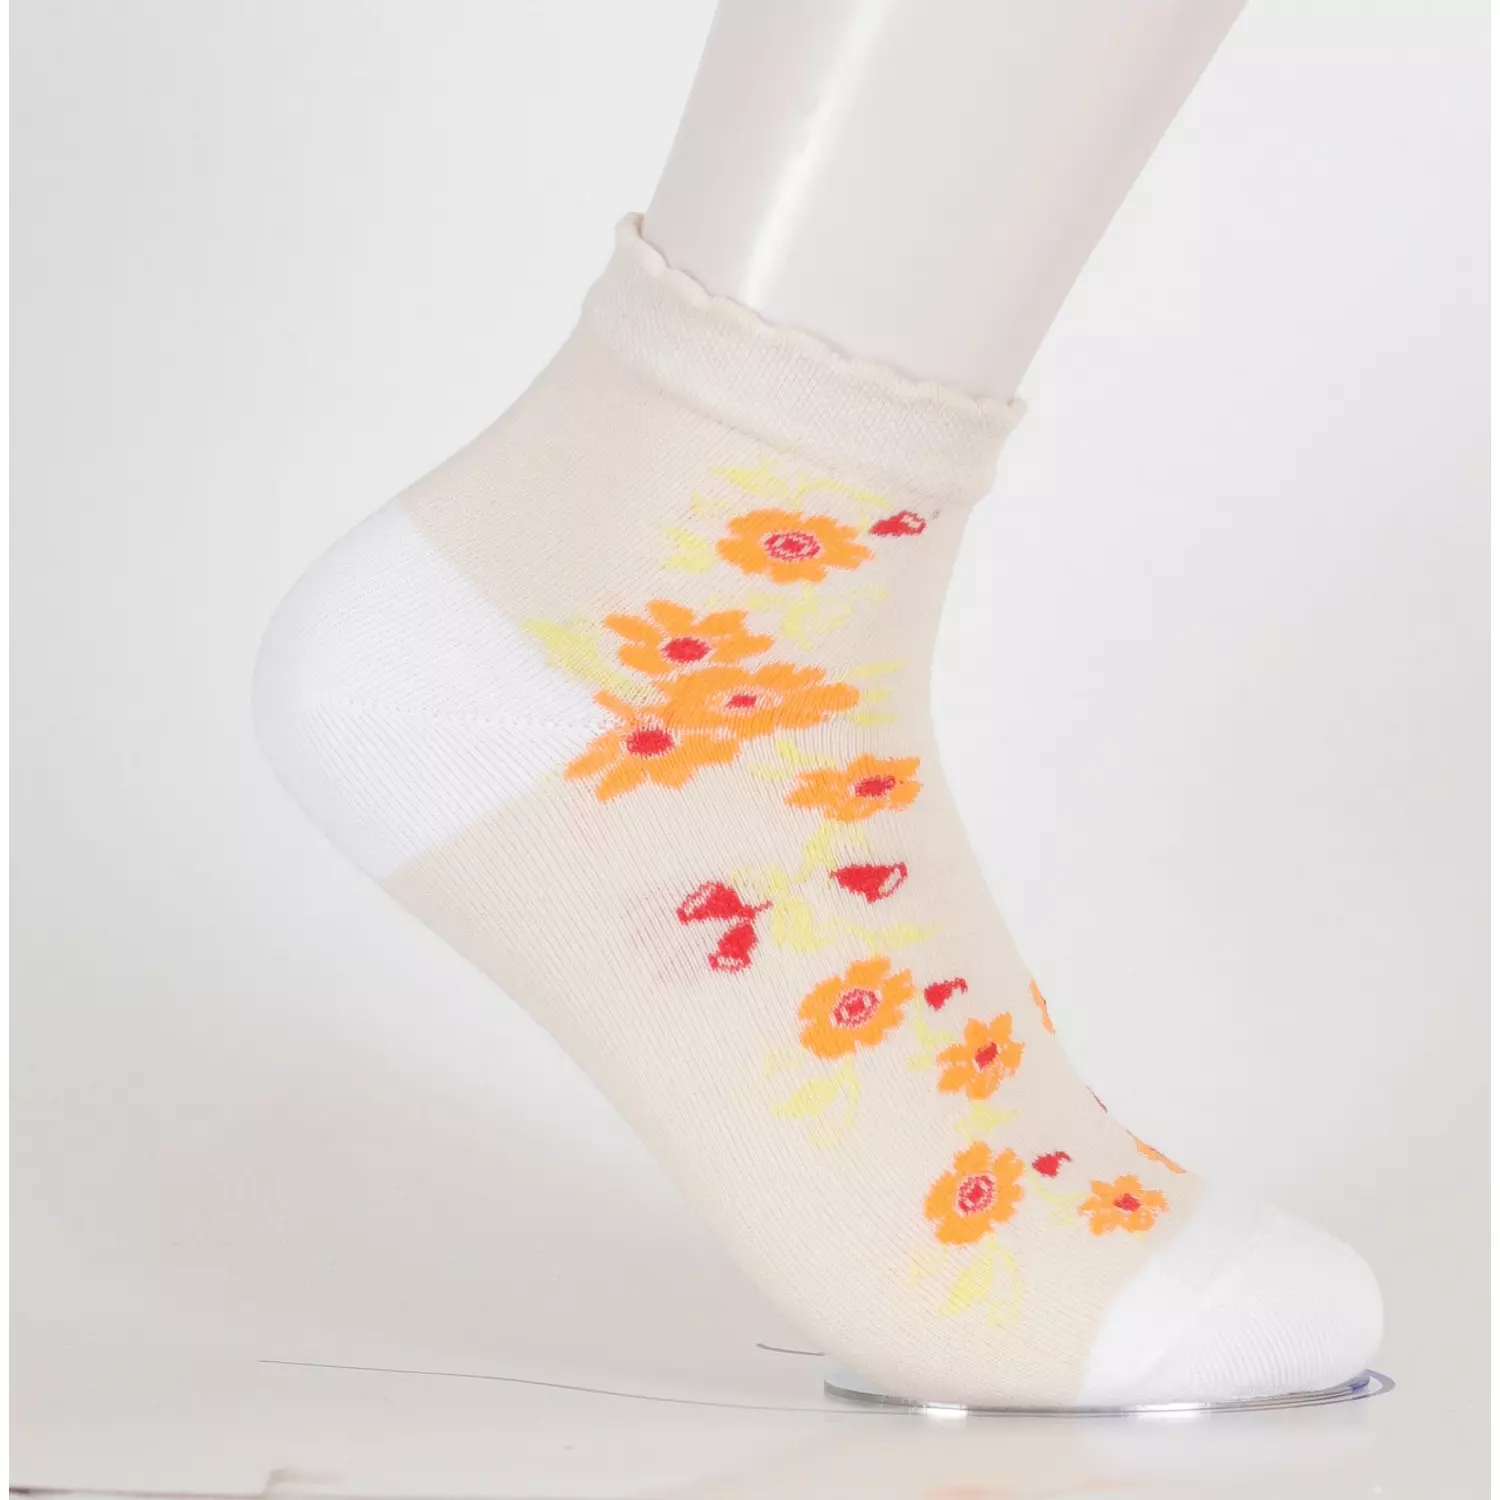  Viva Half Socks for women's  hover image